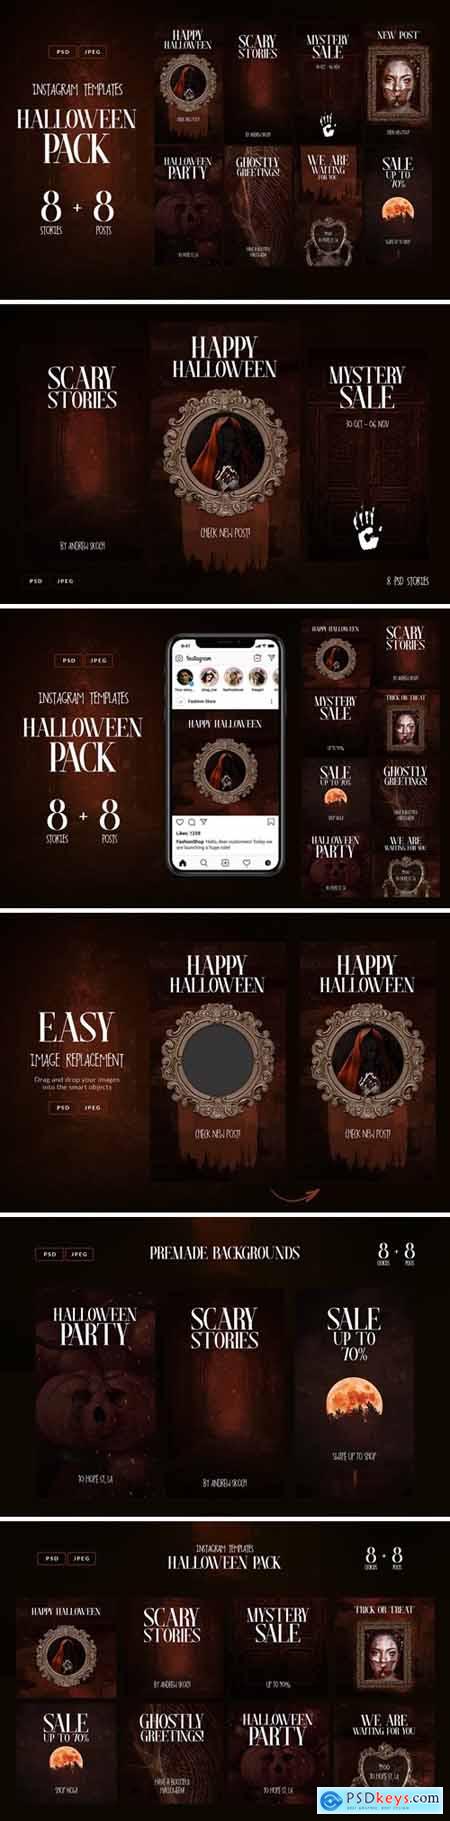 Halloween Instagram Pack